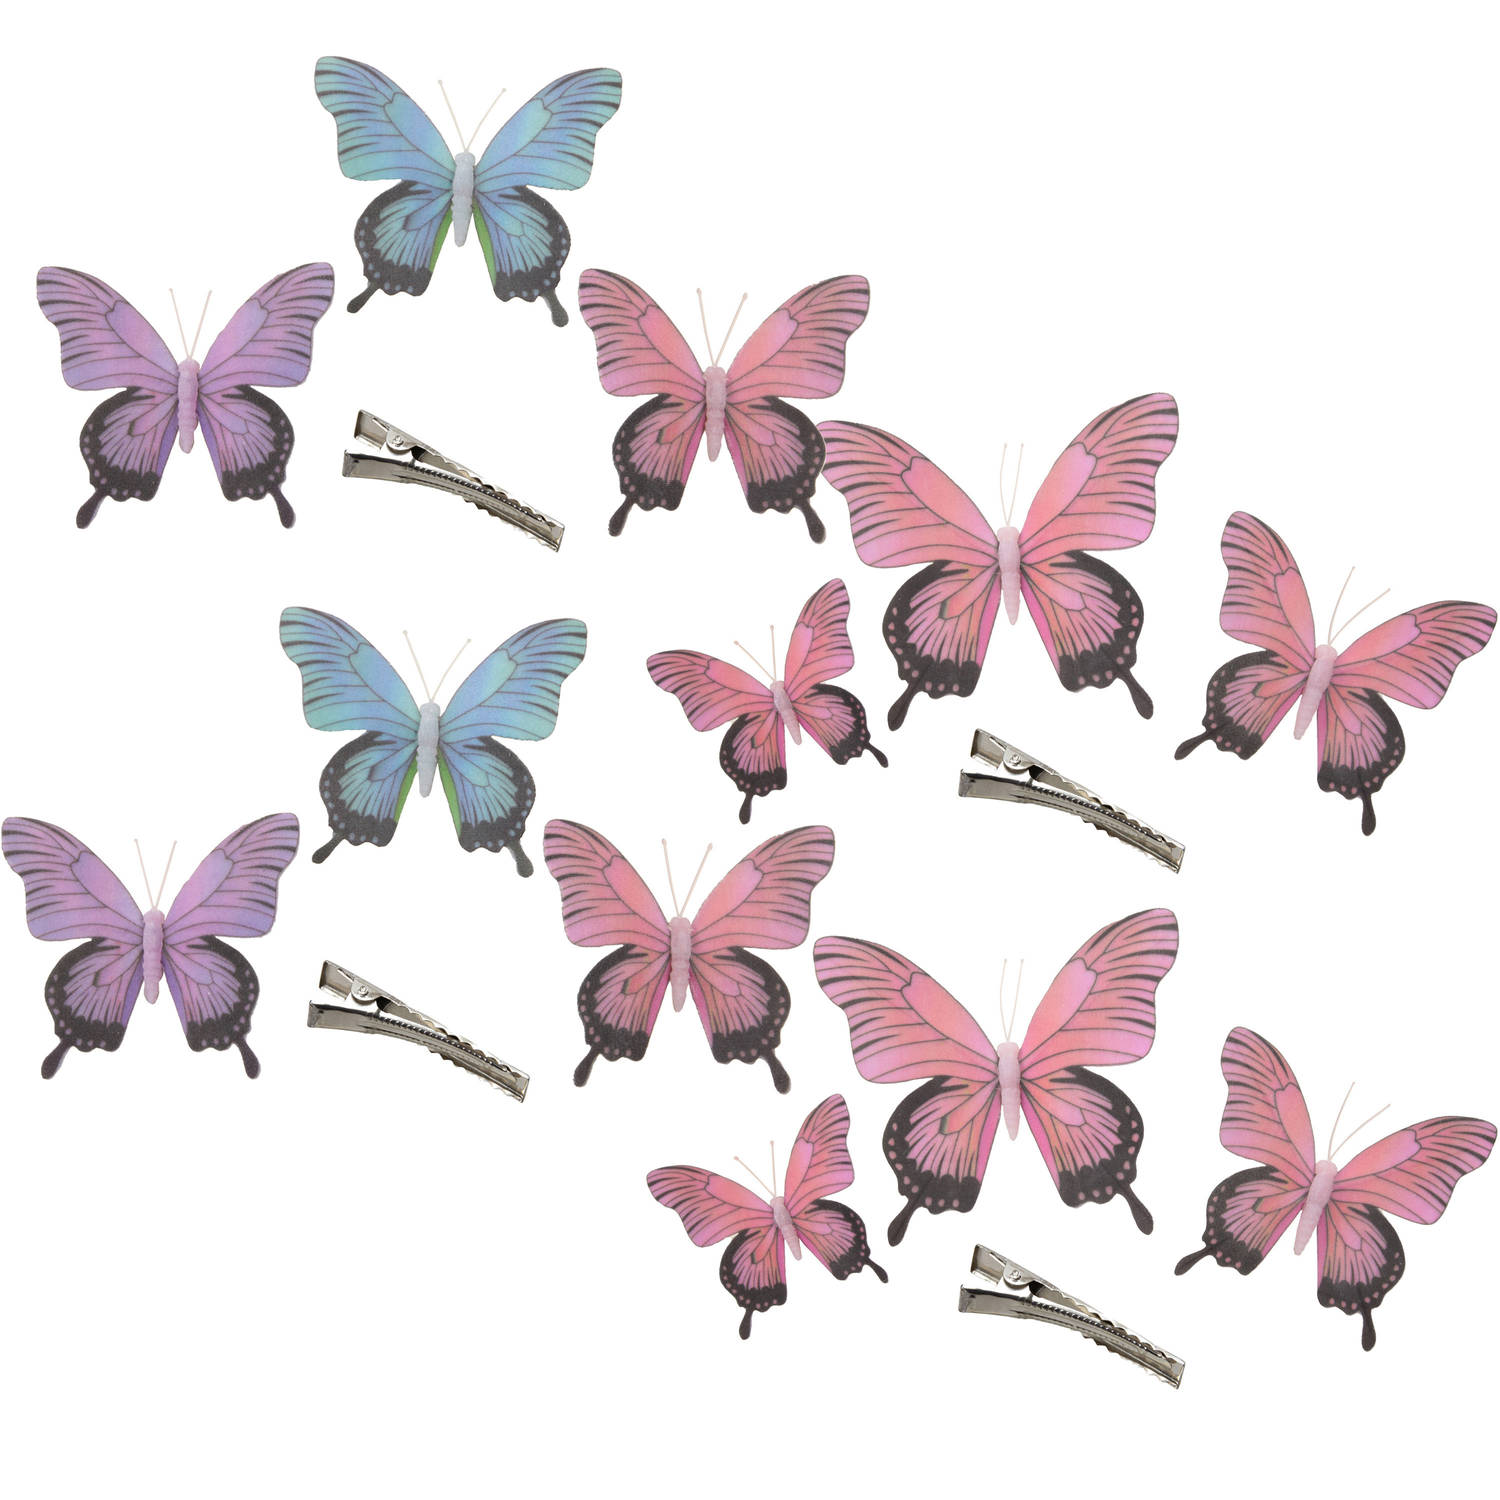 Othmar Decorations Decoratie Vlinders Op Clip 12x Stuks Paars-blauw-roze 12-16-20 Cm Hobbydecoratieo